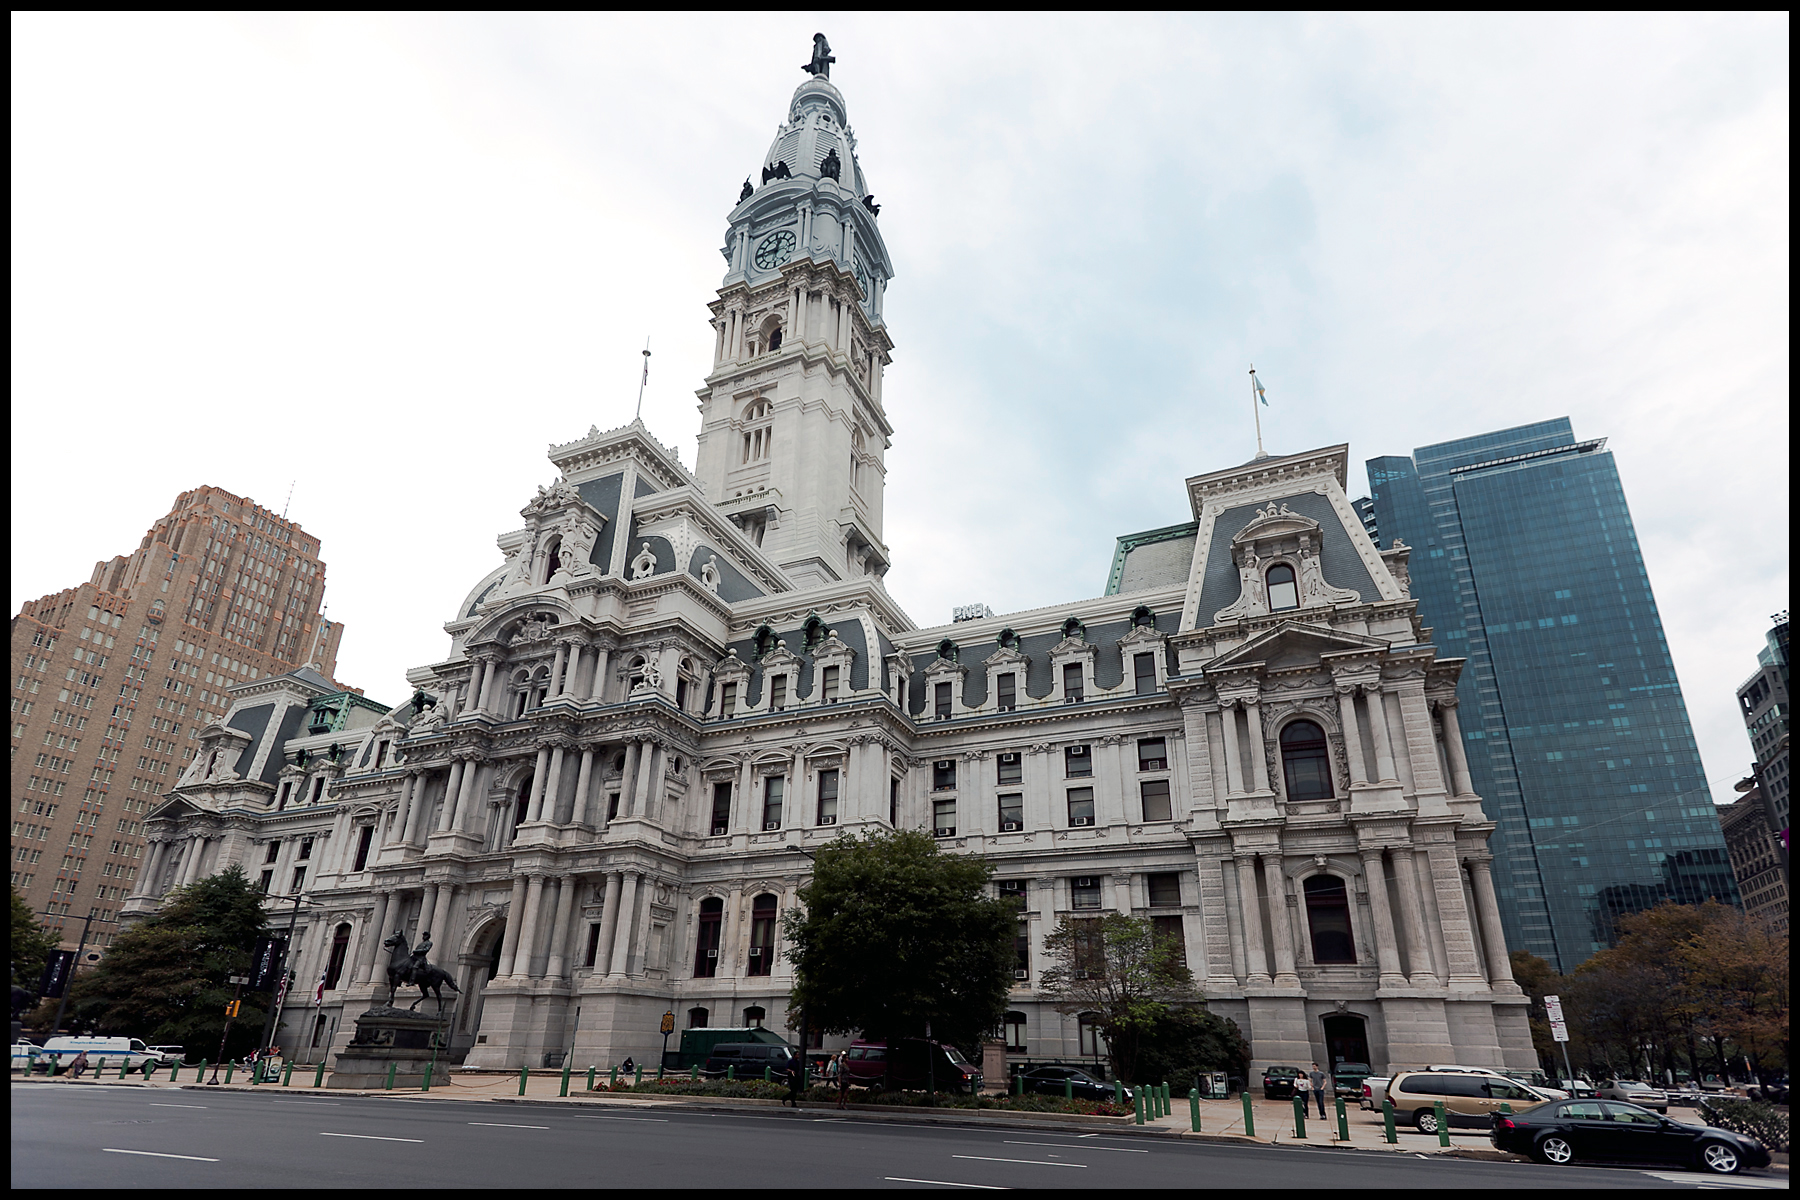 3 city hall. City Hall Филадельфия. Филадельфийская ратуша Пенсильвания. Городская ратуша в Филадельфии. Здание мэрии Филадельфии.